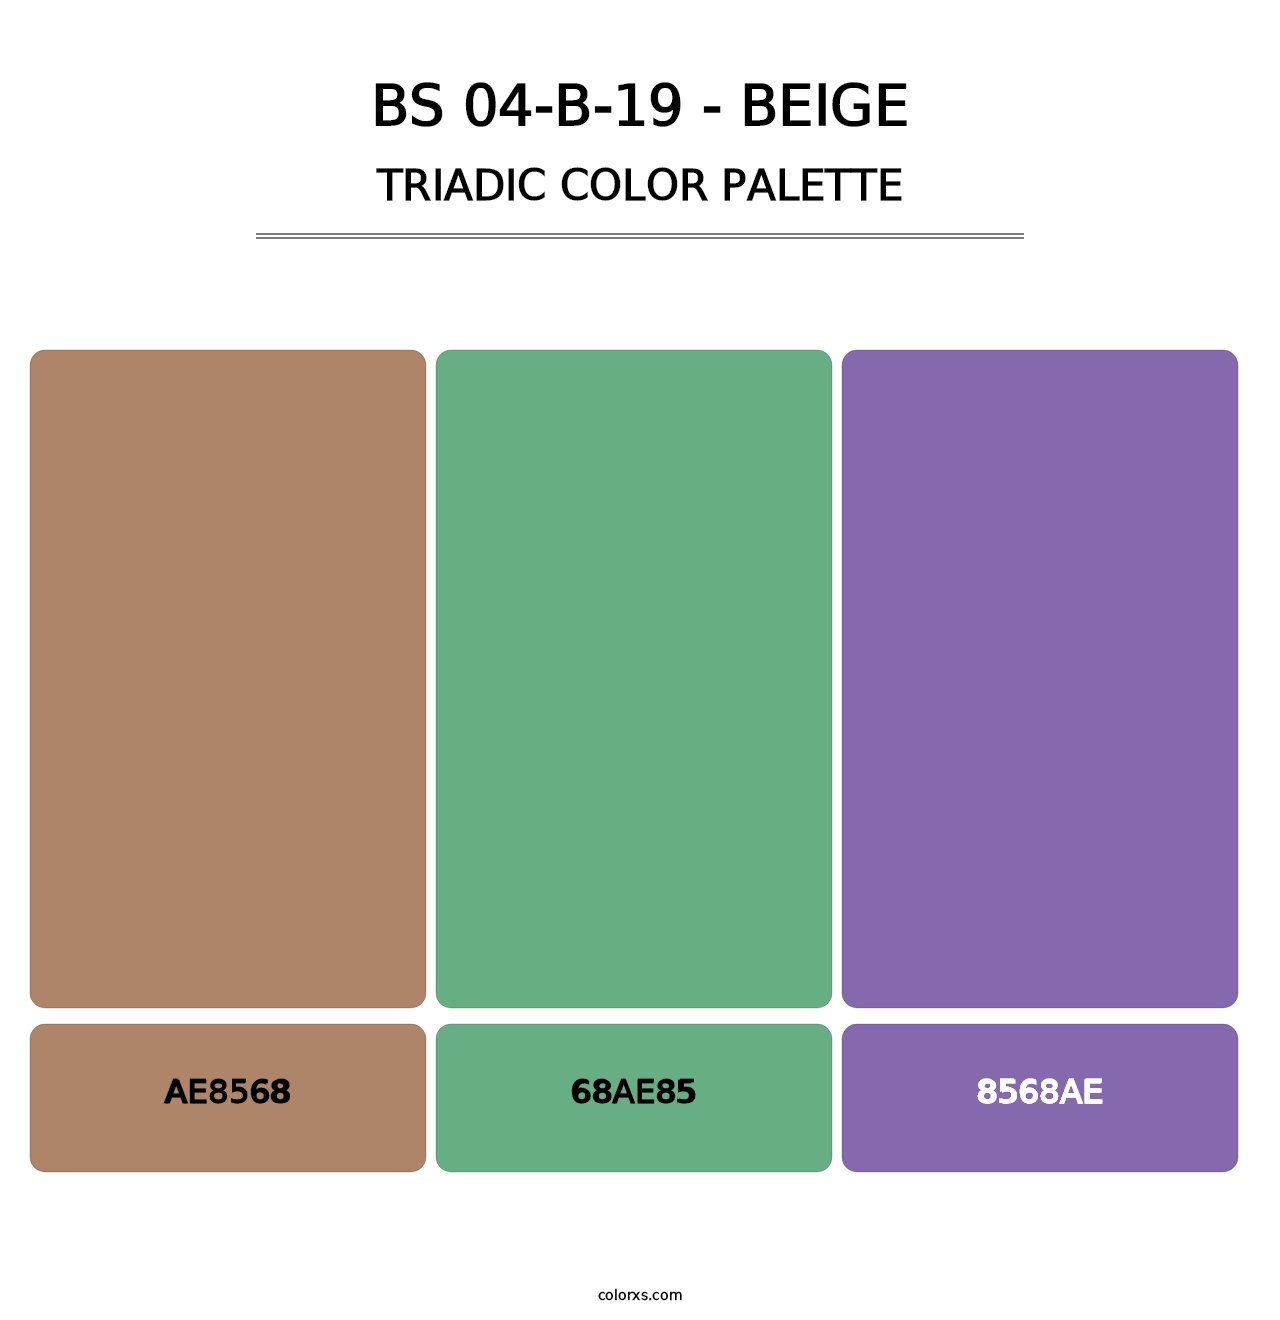 BS 04-B-19 - Beige - Triadic Color Palette